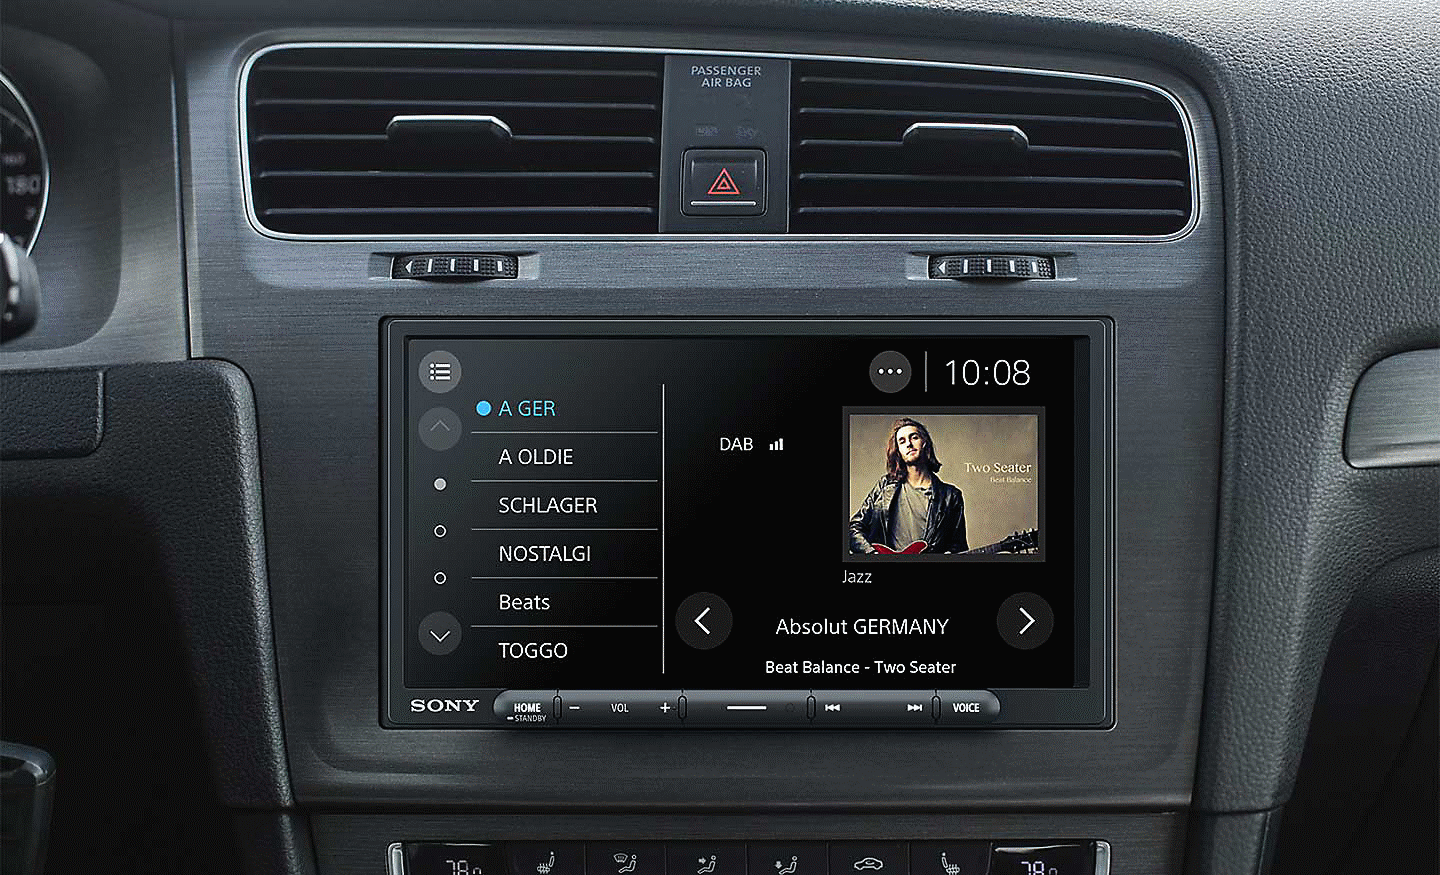 Afbeelding van de XAV-AX4050 in een dashboard met de interface van DAB-radio op het scherm